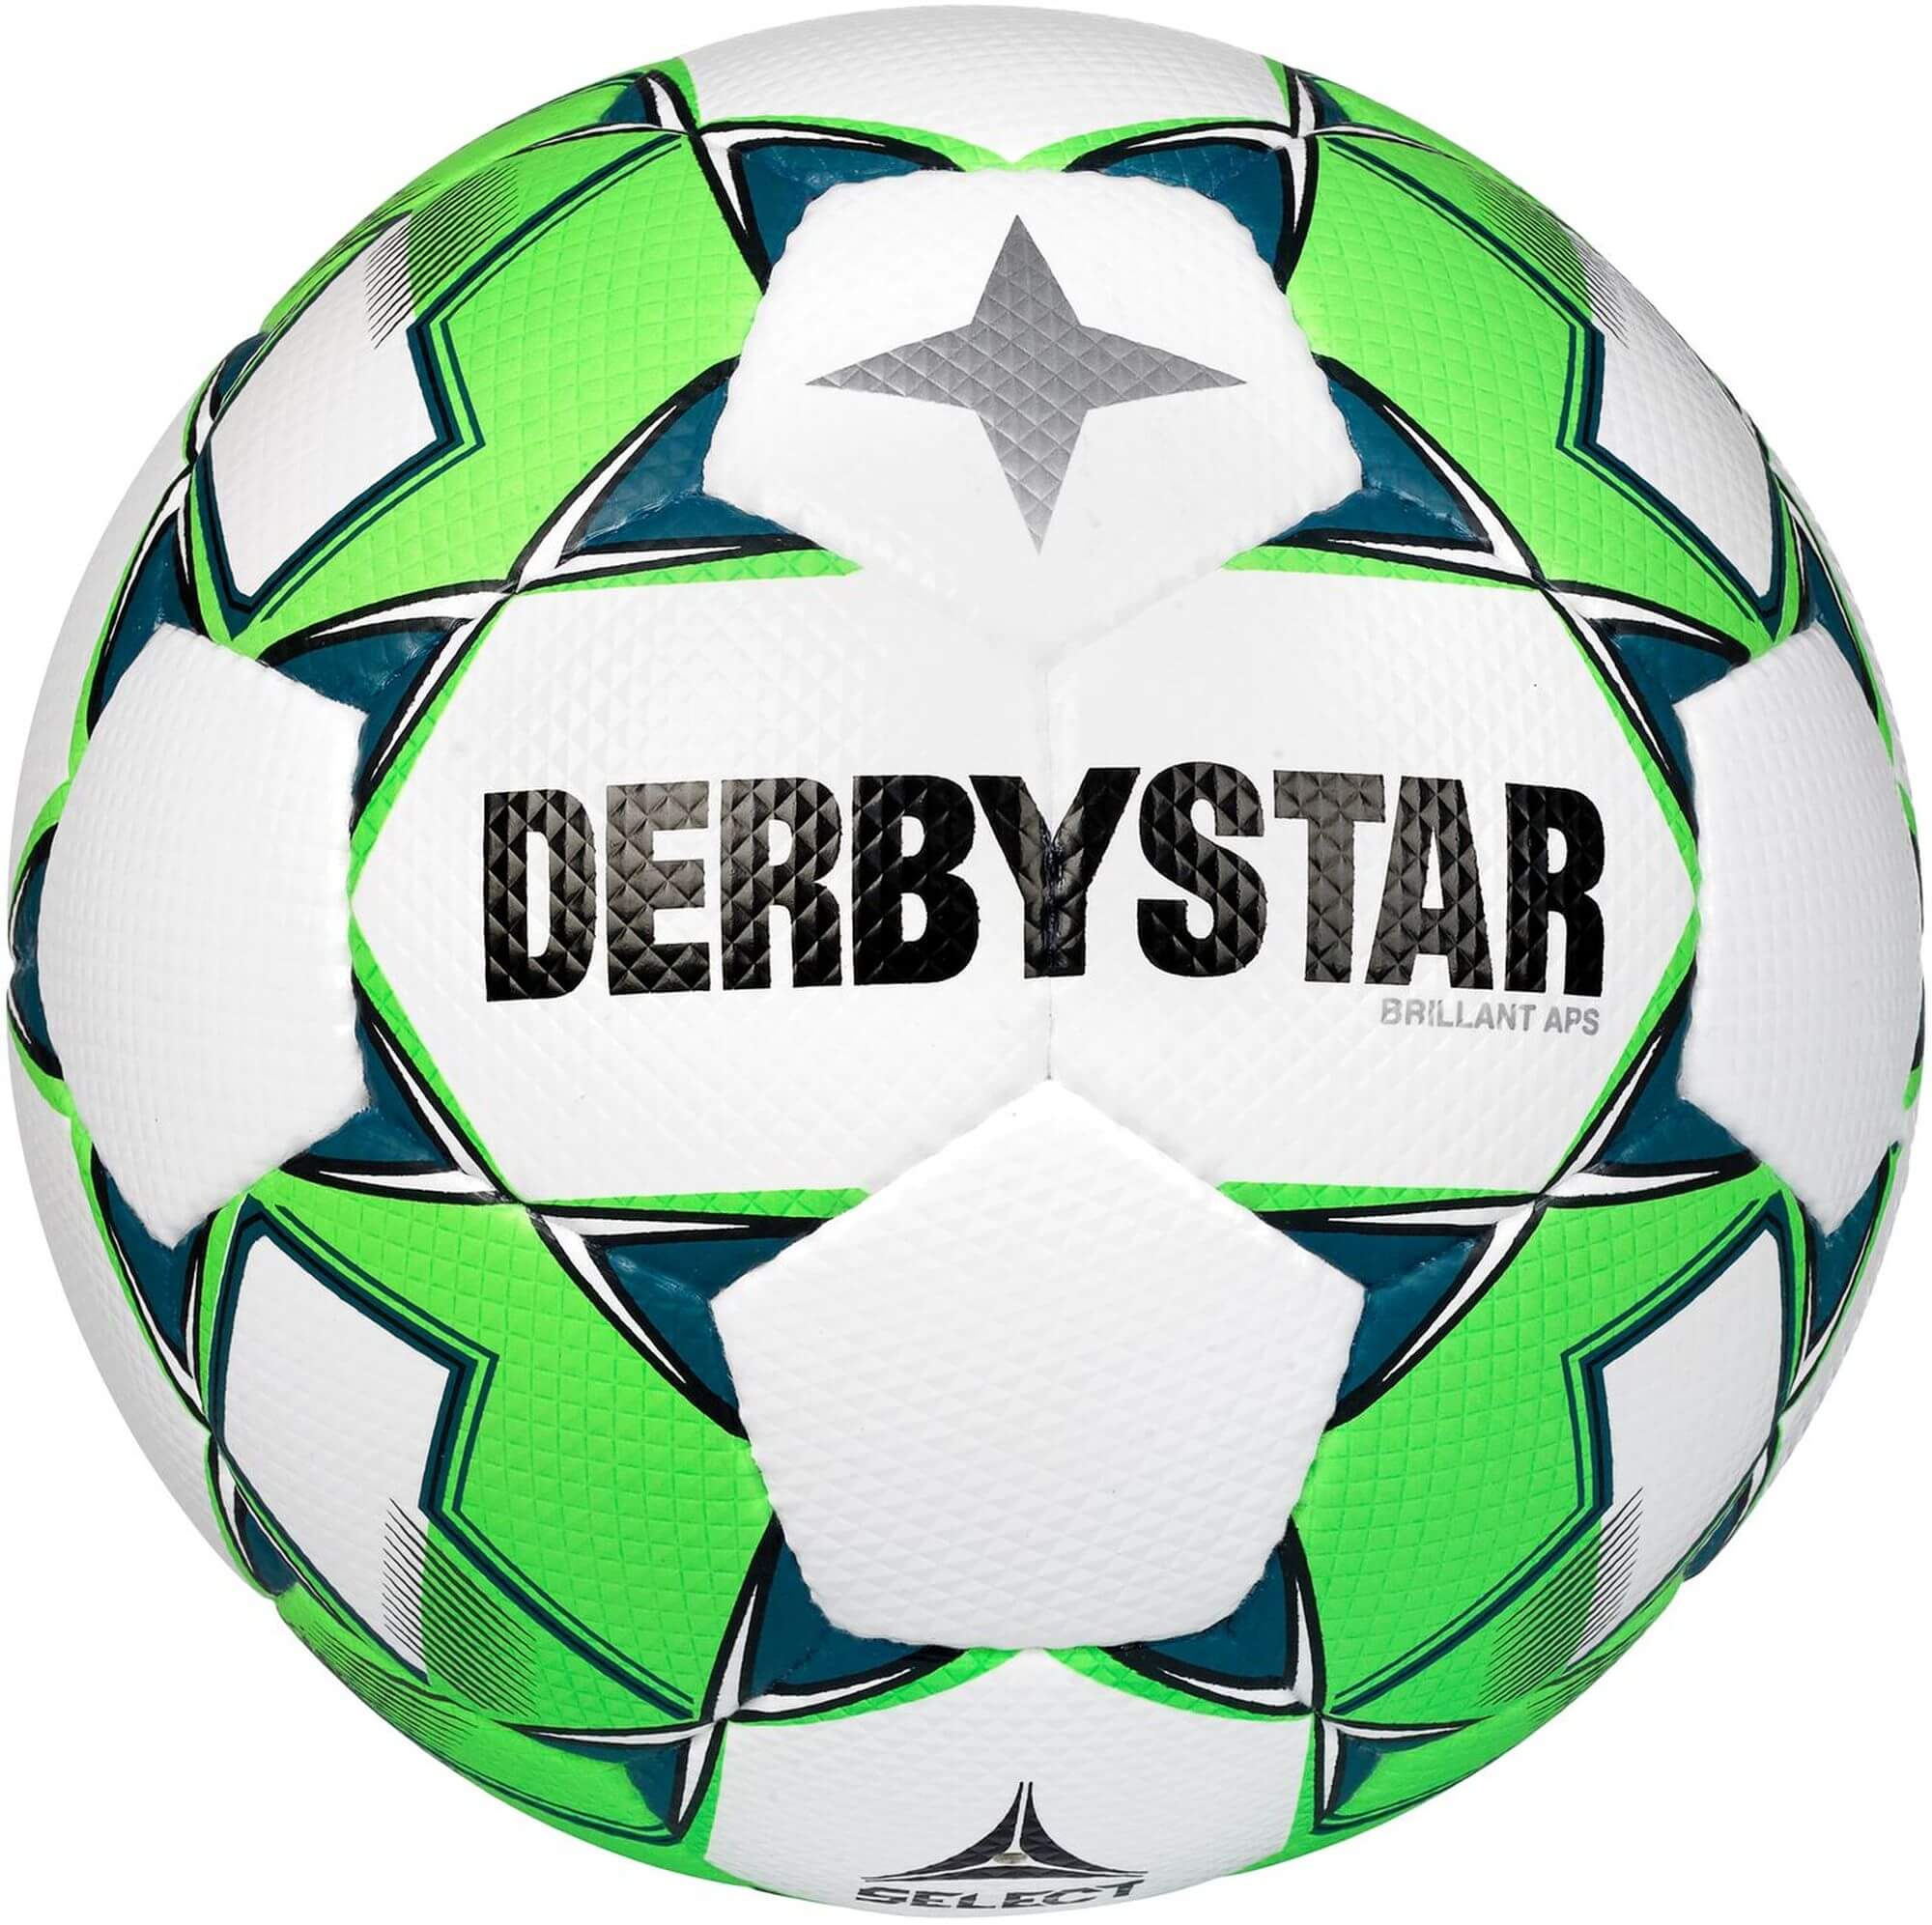 Derbystar Spielball BRILLANT APS v22